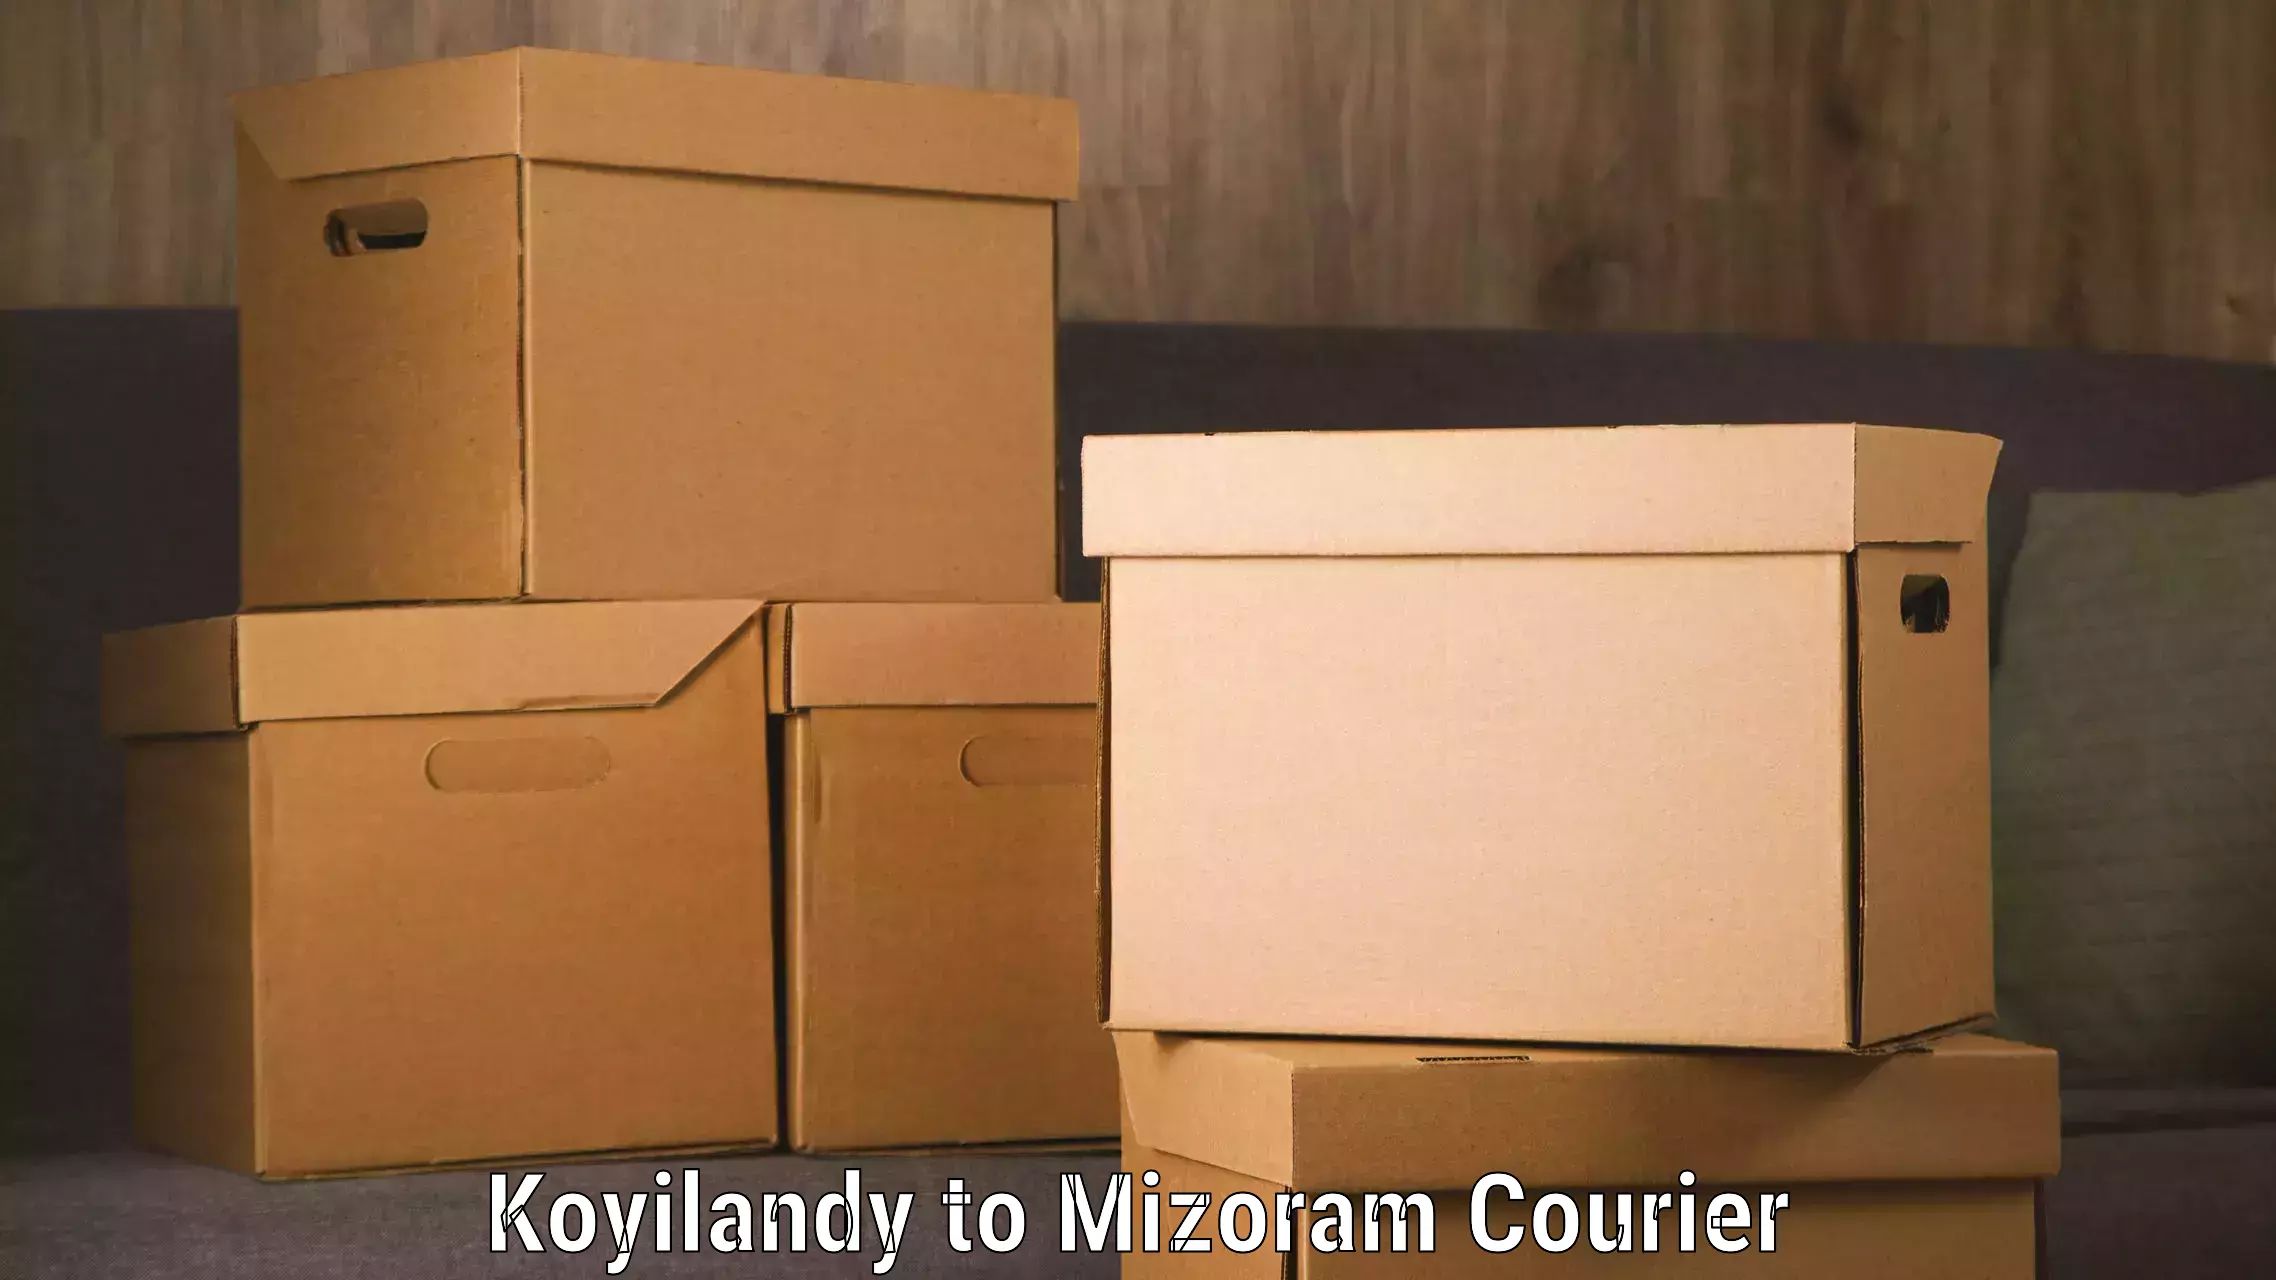 Nationwide shipping capabilities in Koyilandy to Mizoram